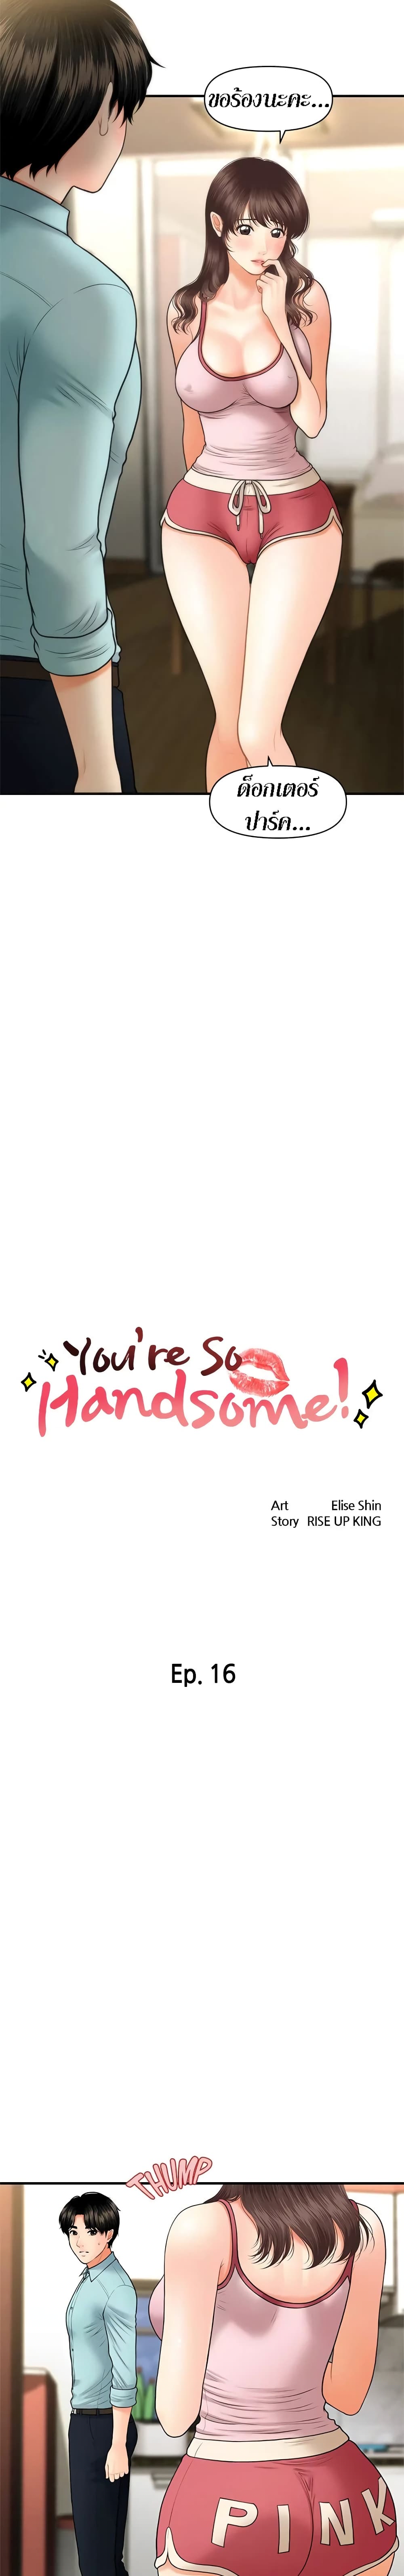 Hey, Handsome 16 (2)